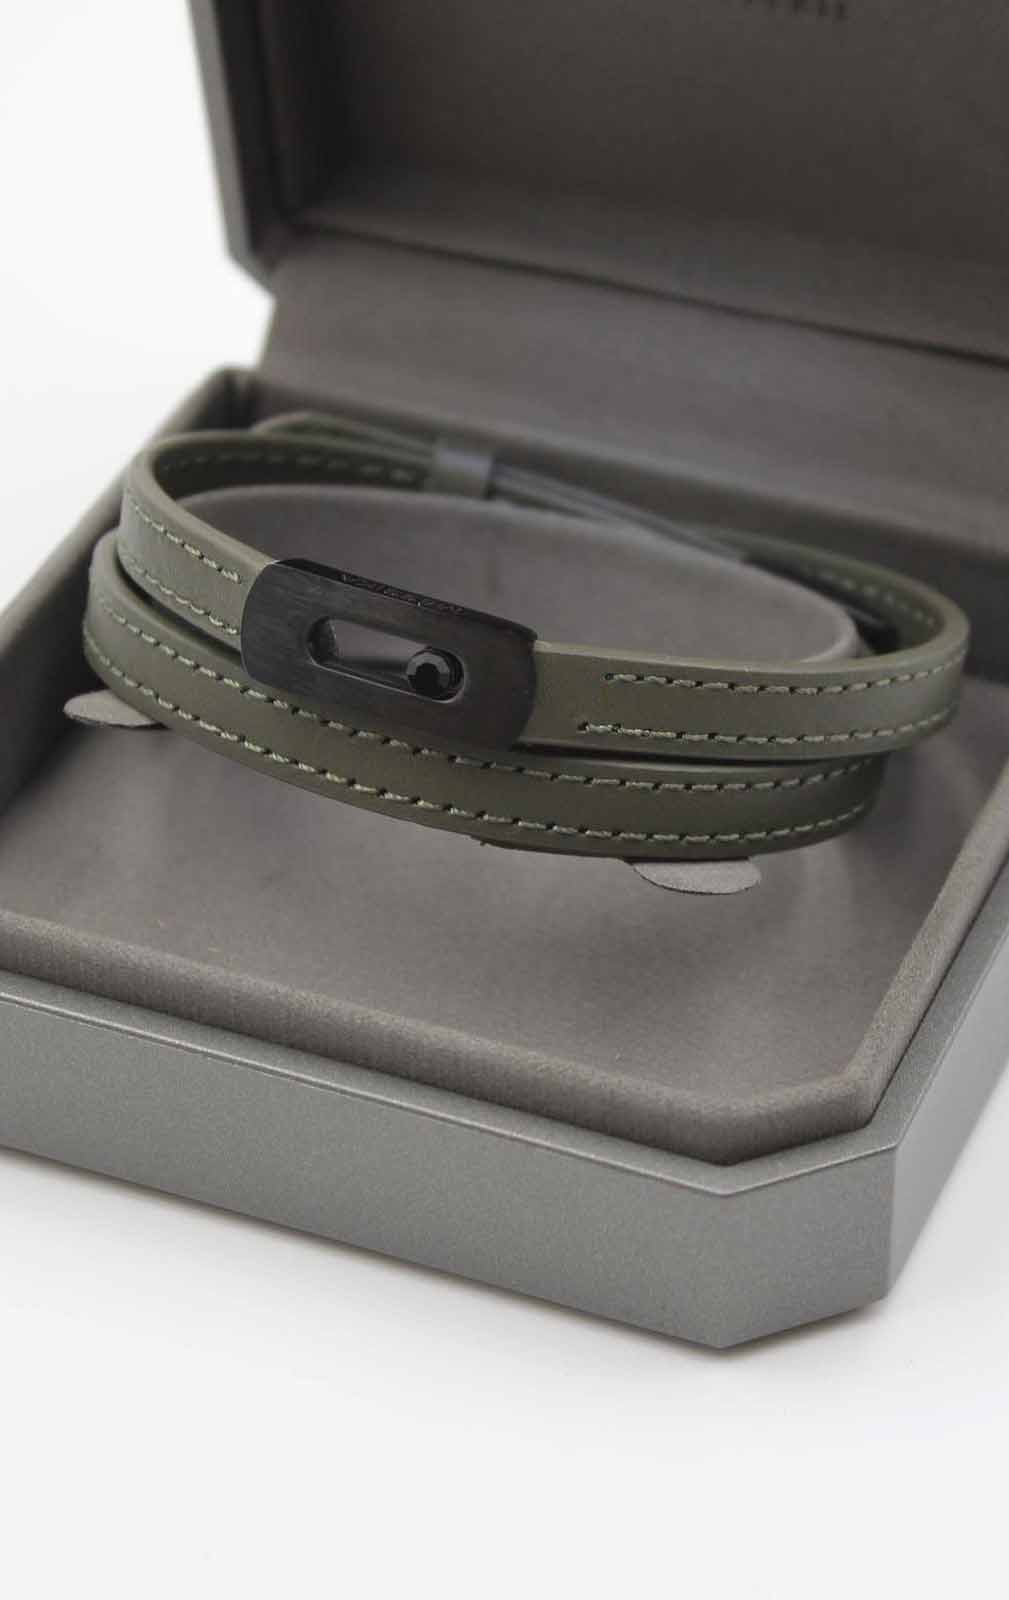 Messika Unisex Leather Bracelets-M-BC-01